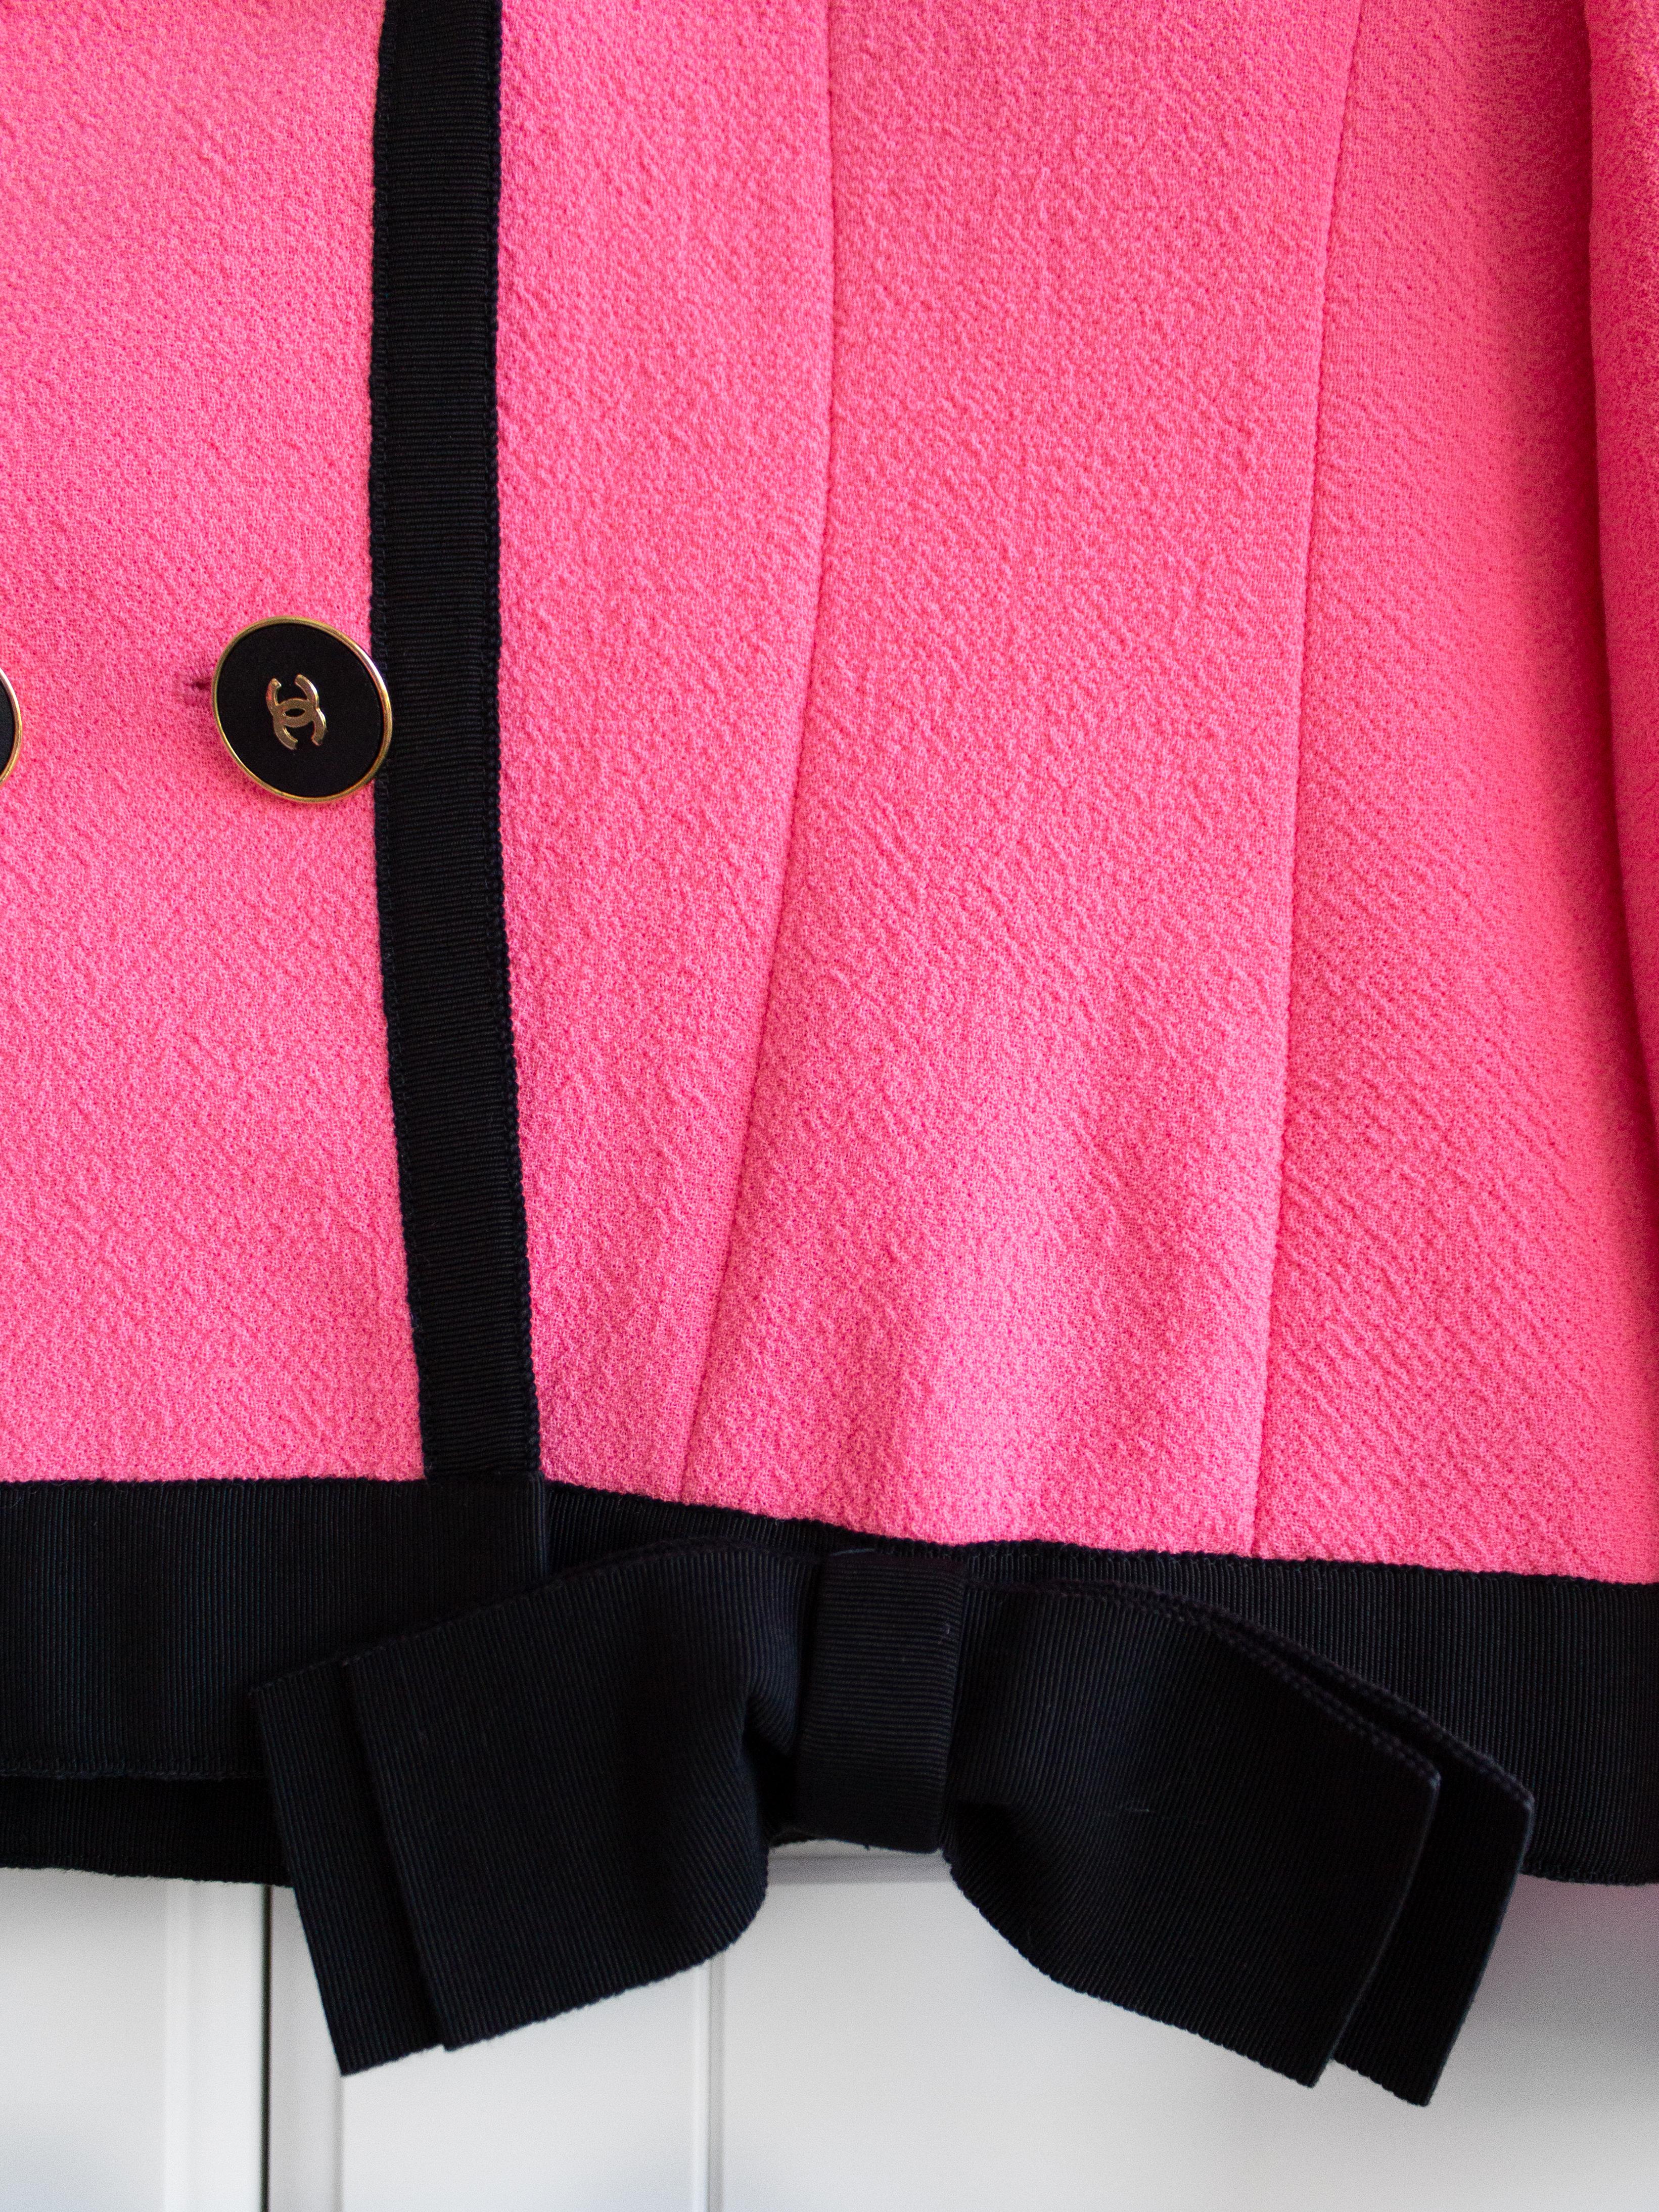 Women's Chanel Vintage Spring 1991 Linda Pink Black Bow Jacket Skirt Suit